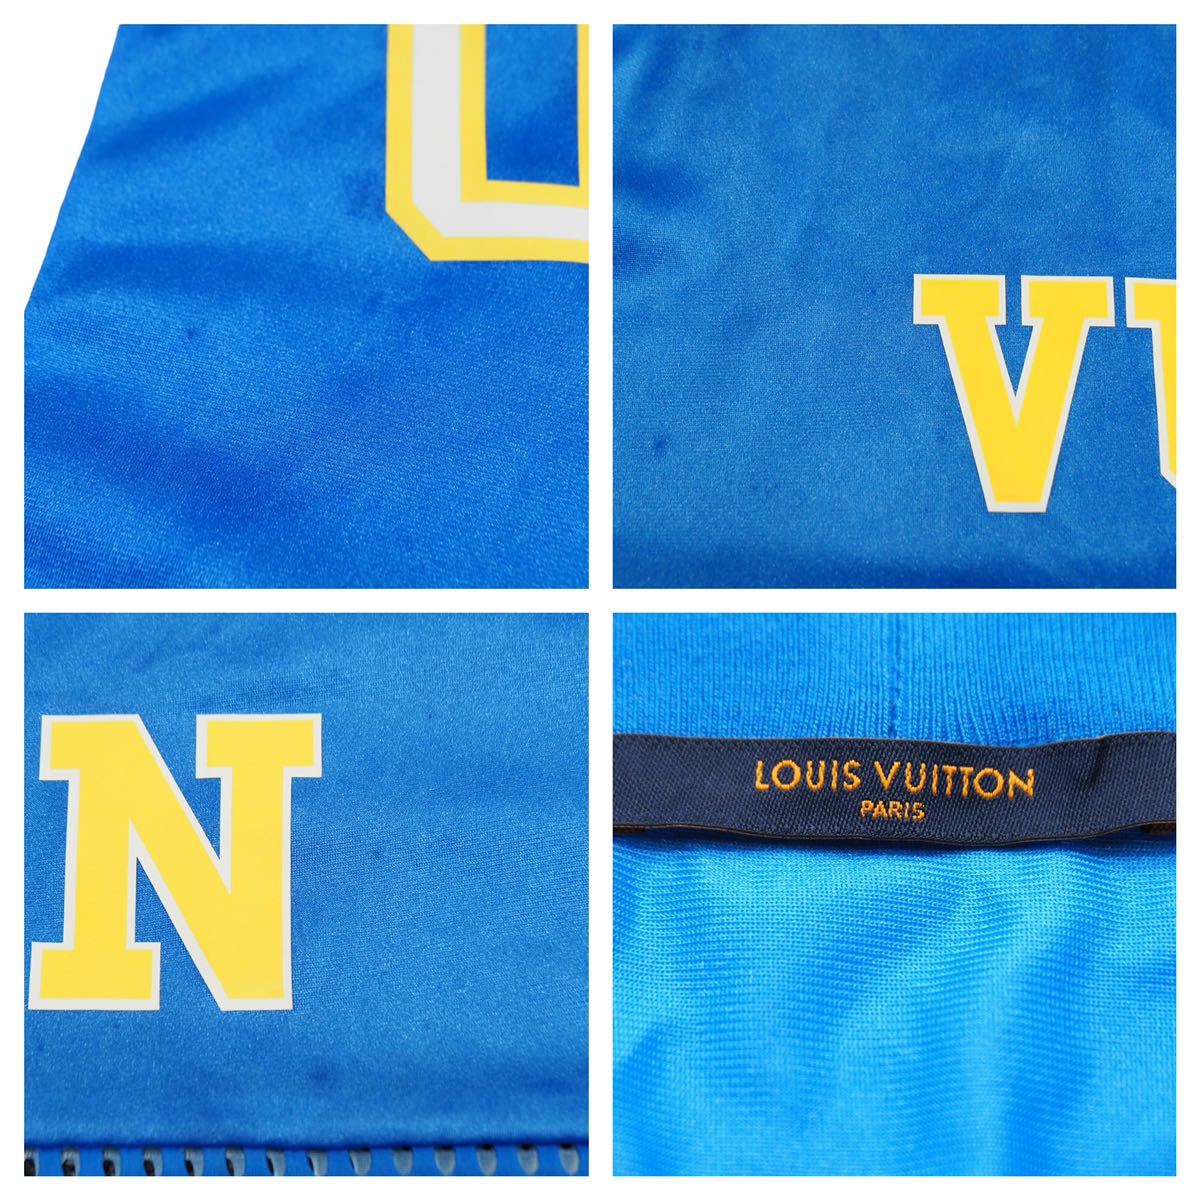 LOUIS VUITTON ルイ・ヴィトン 22SS スポーティTシャツウィズパッチ RM221 J65 HMY65W ロゴ トップス サイズ5L  美品 中古 42104 正規品